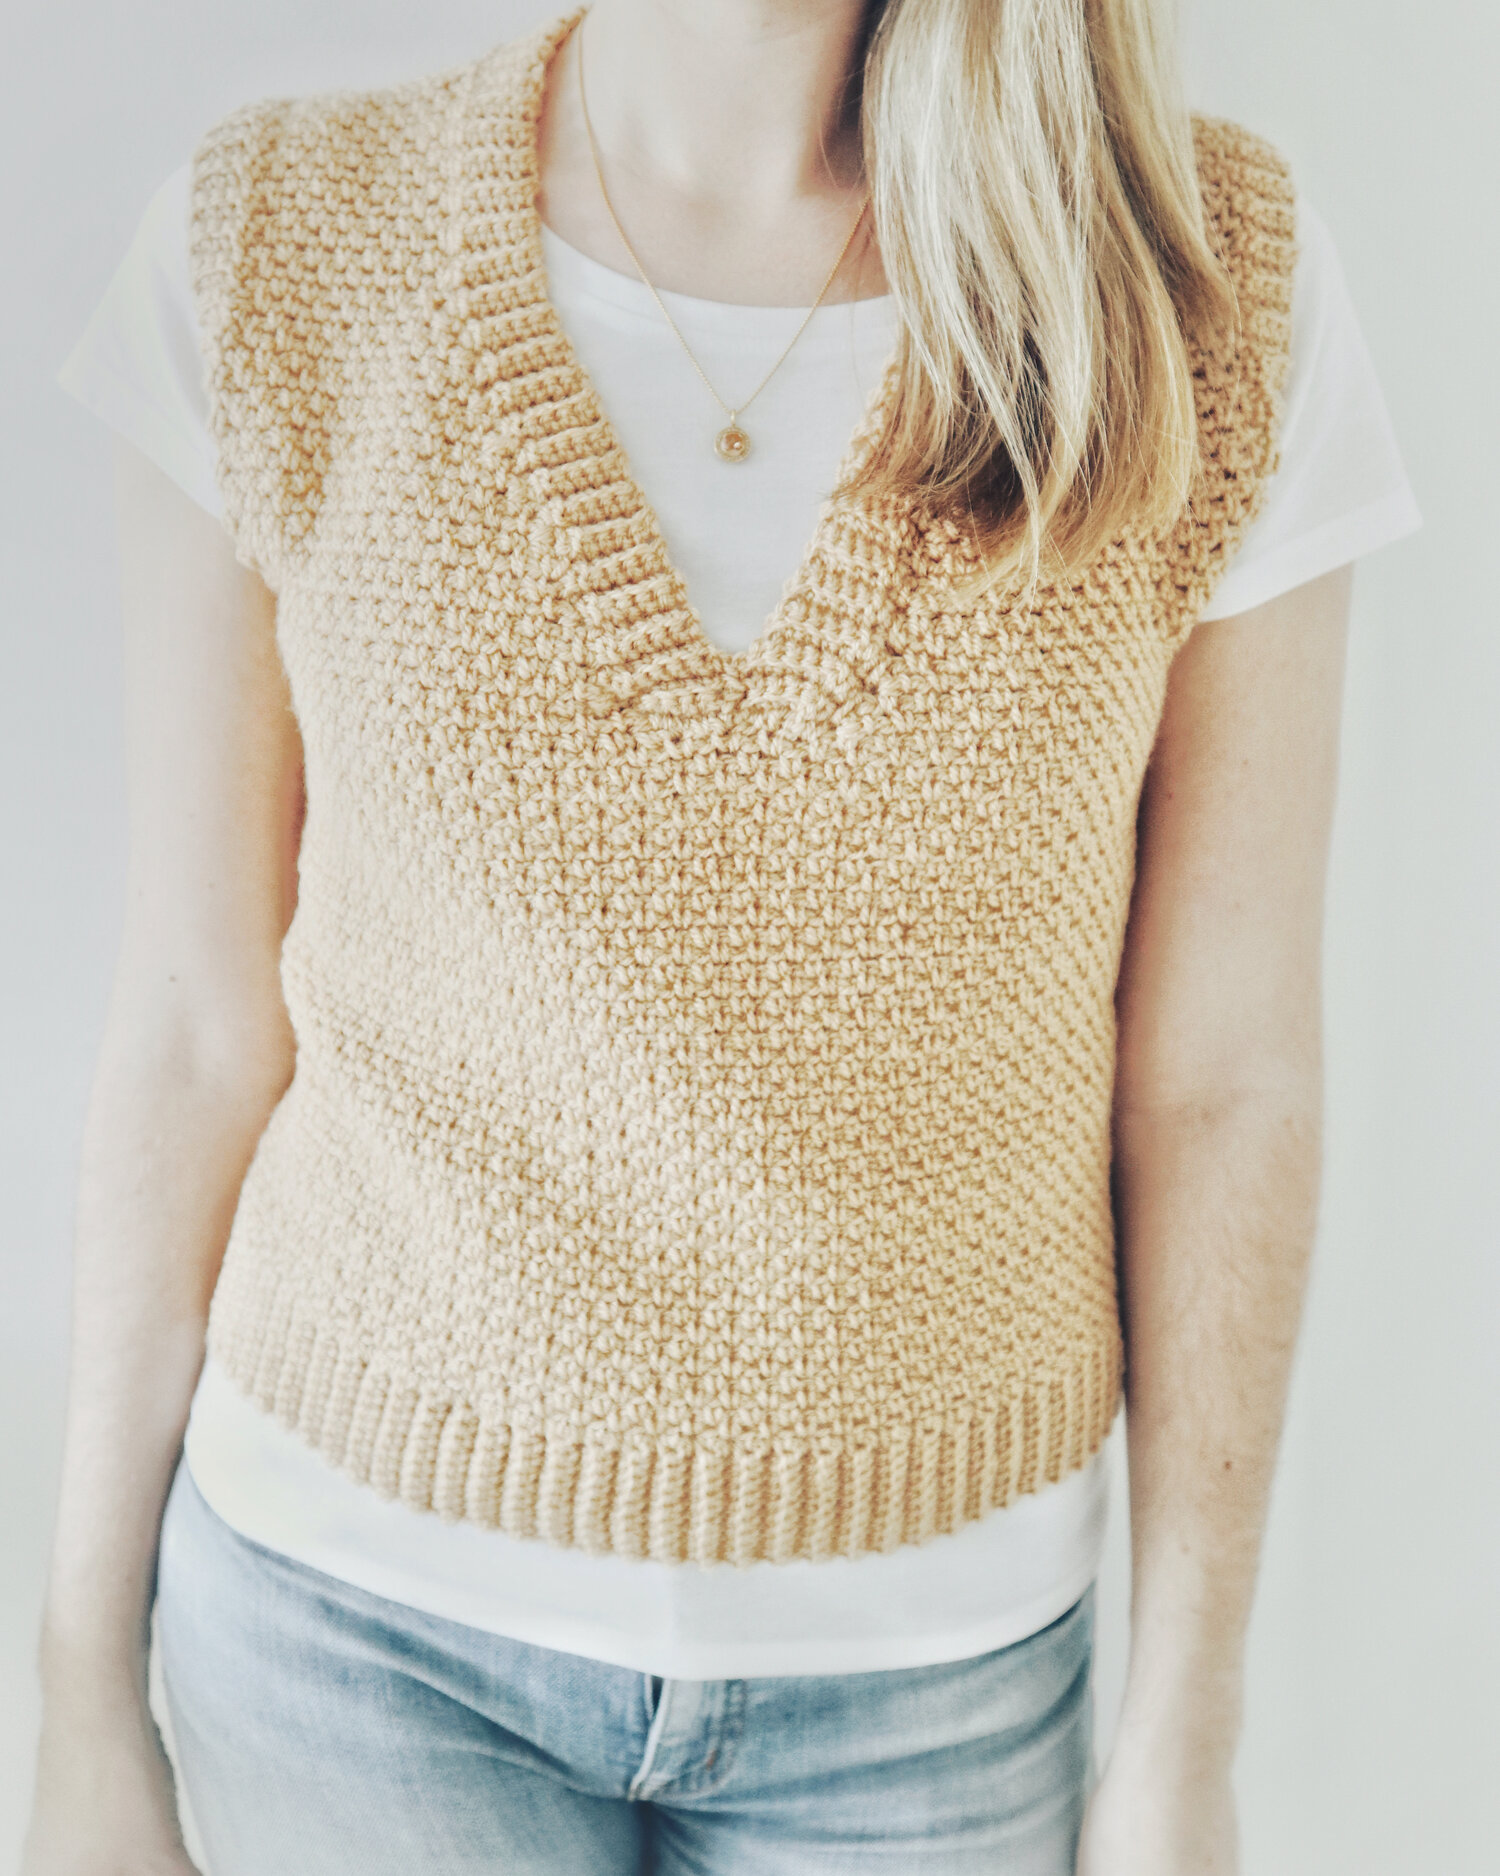 Crochet Pattern x Toffee Shop Vest — Coffee & Crocheting